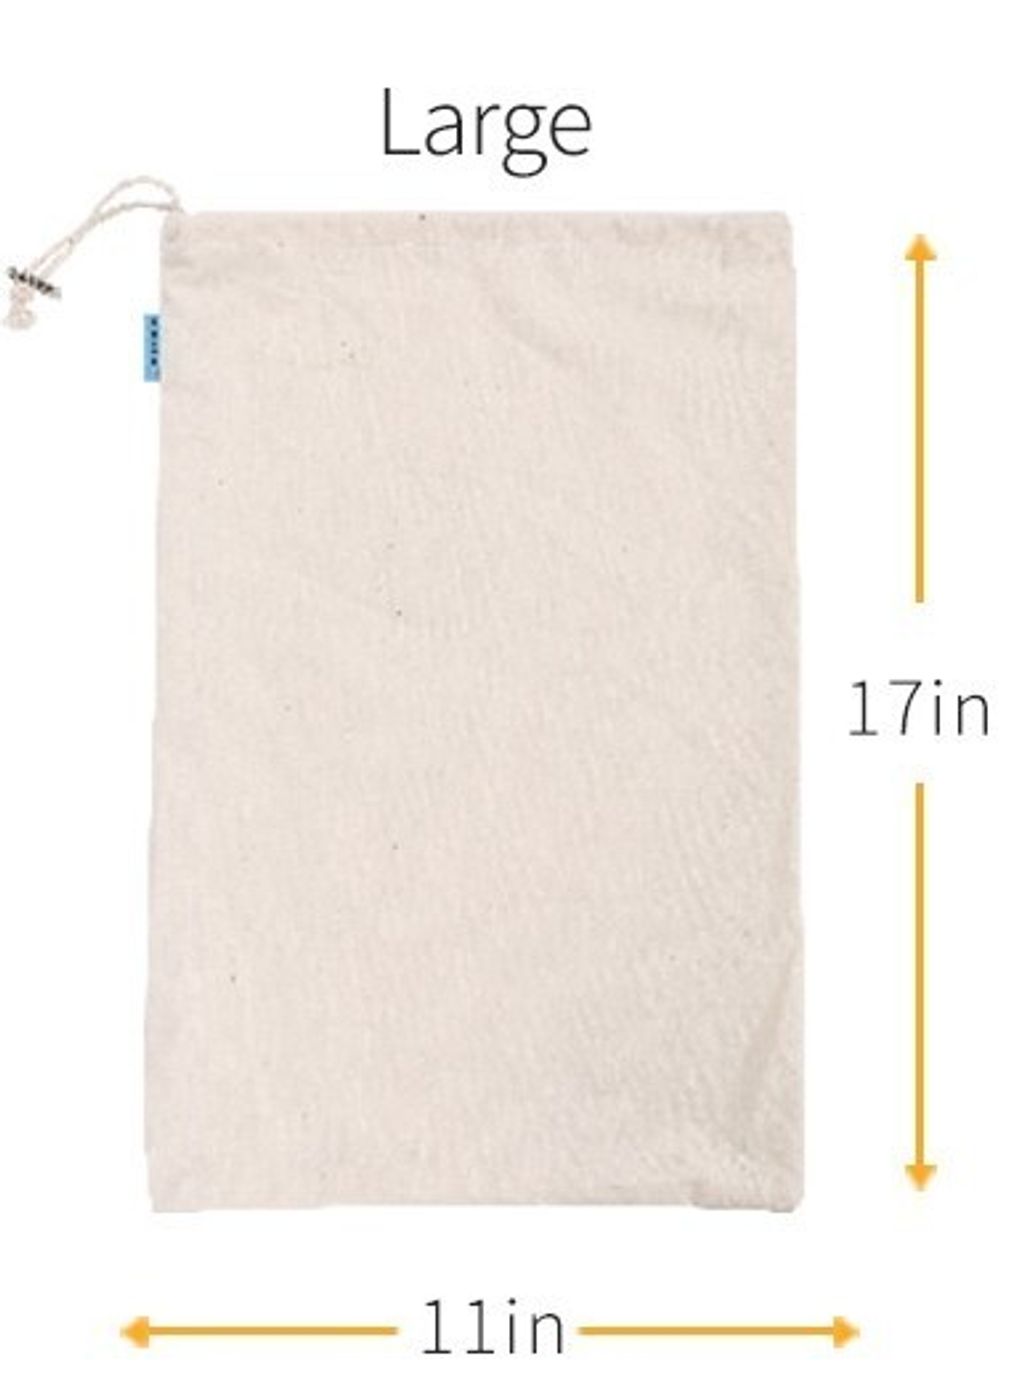 cotton bulk bag measurement Large